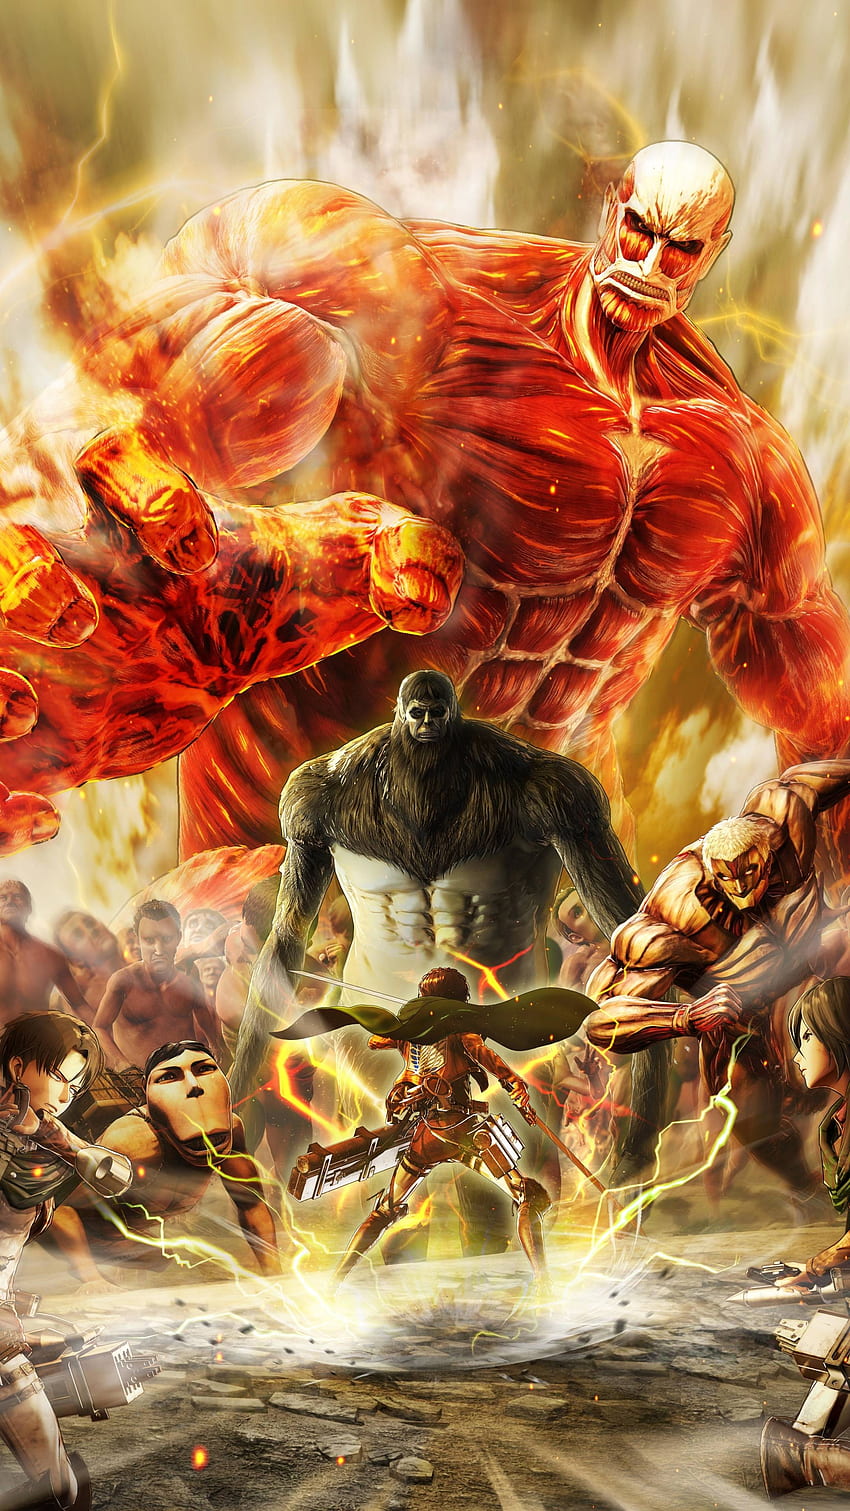 Attack on Titan Season 4 new trailer drops as final battle approaches -  Dexerto